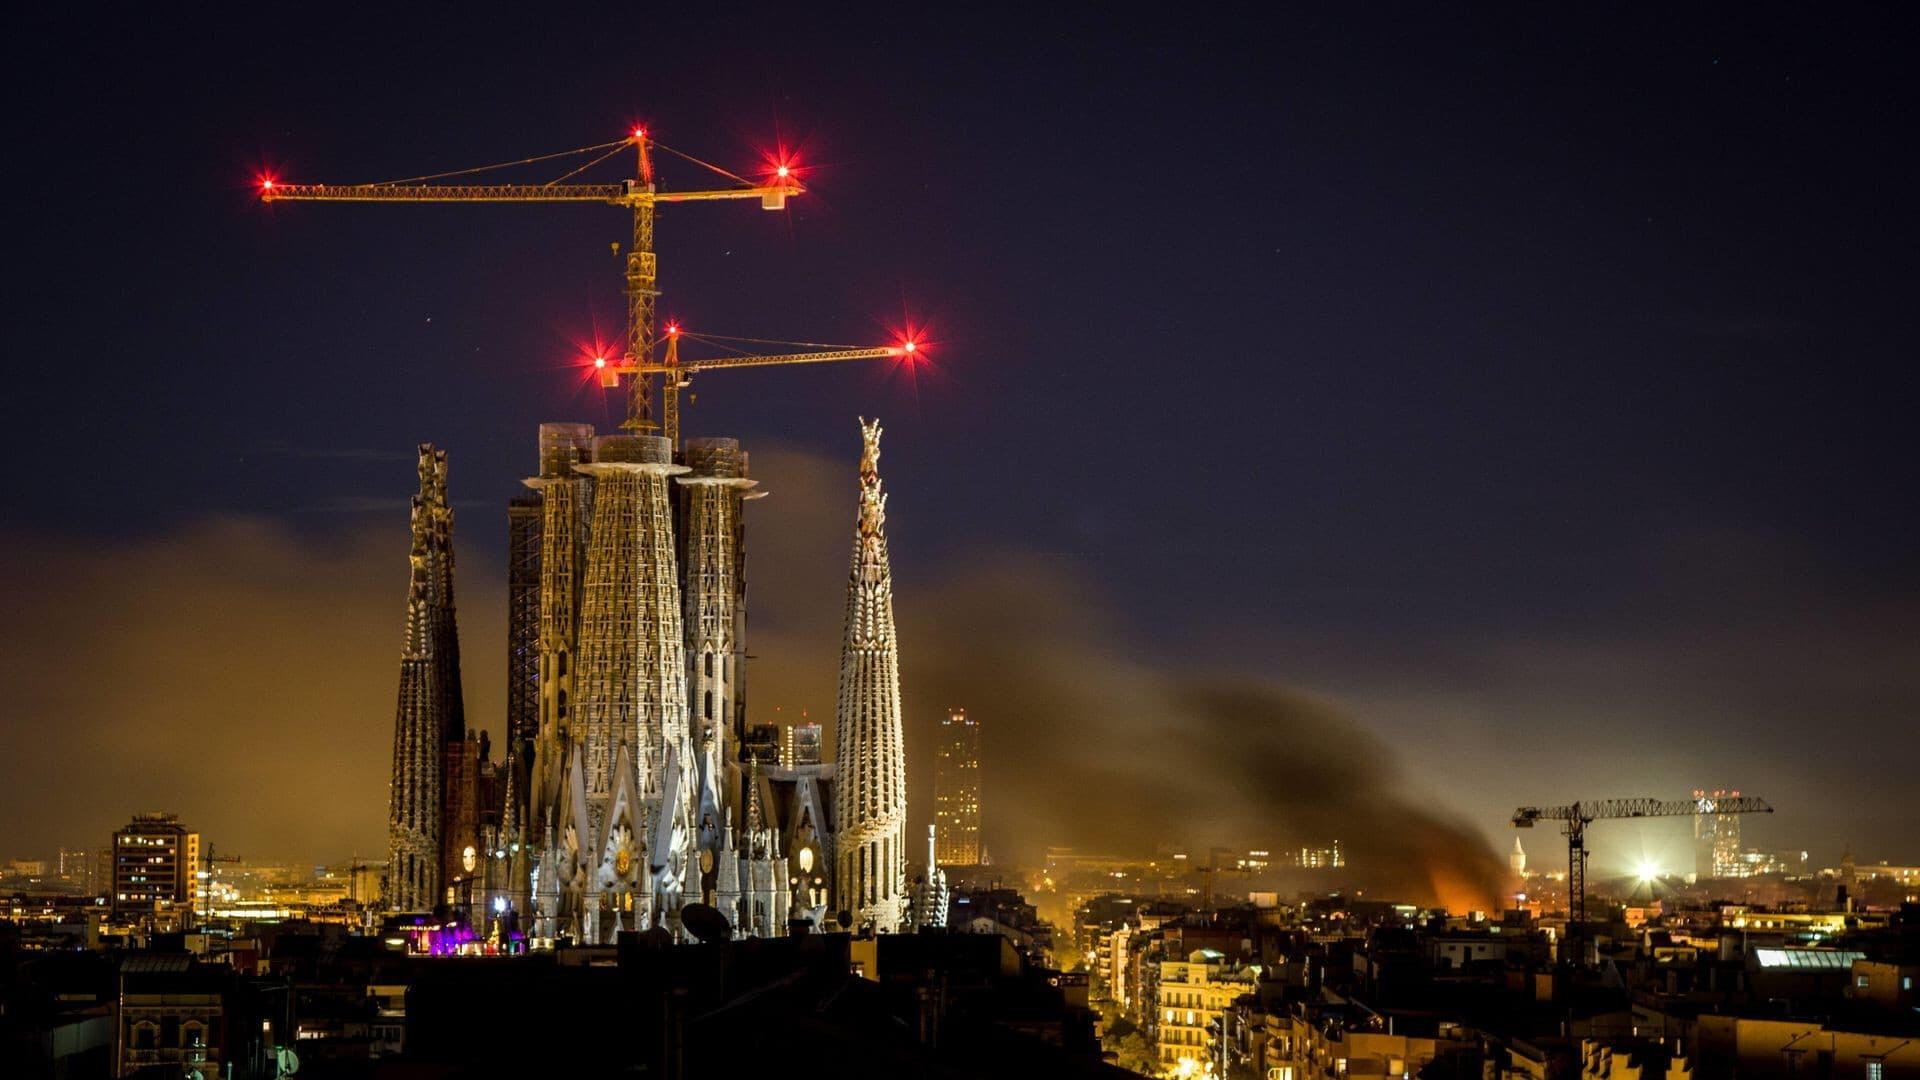 Barcelona, la rosa de foc backdrop